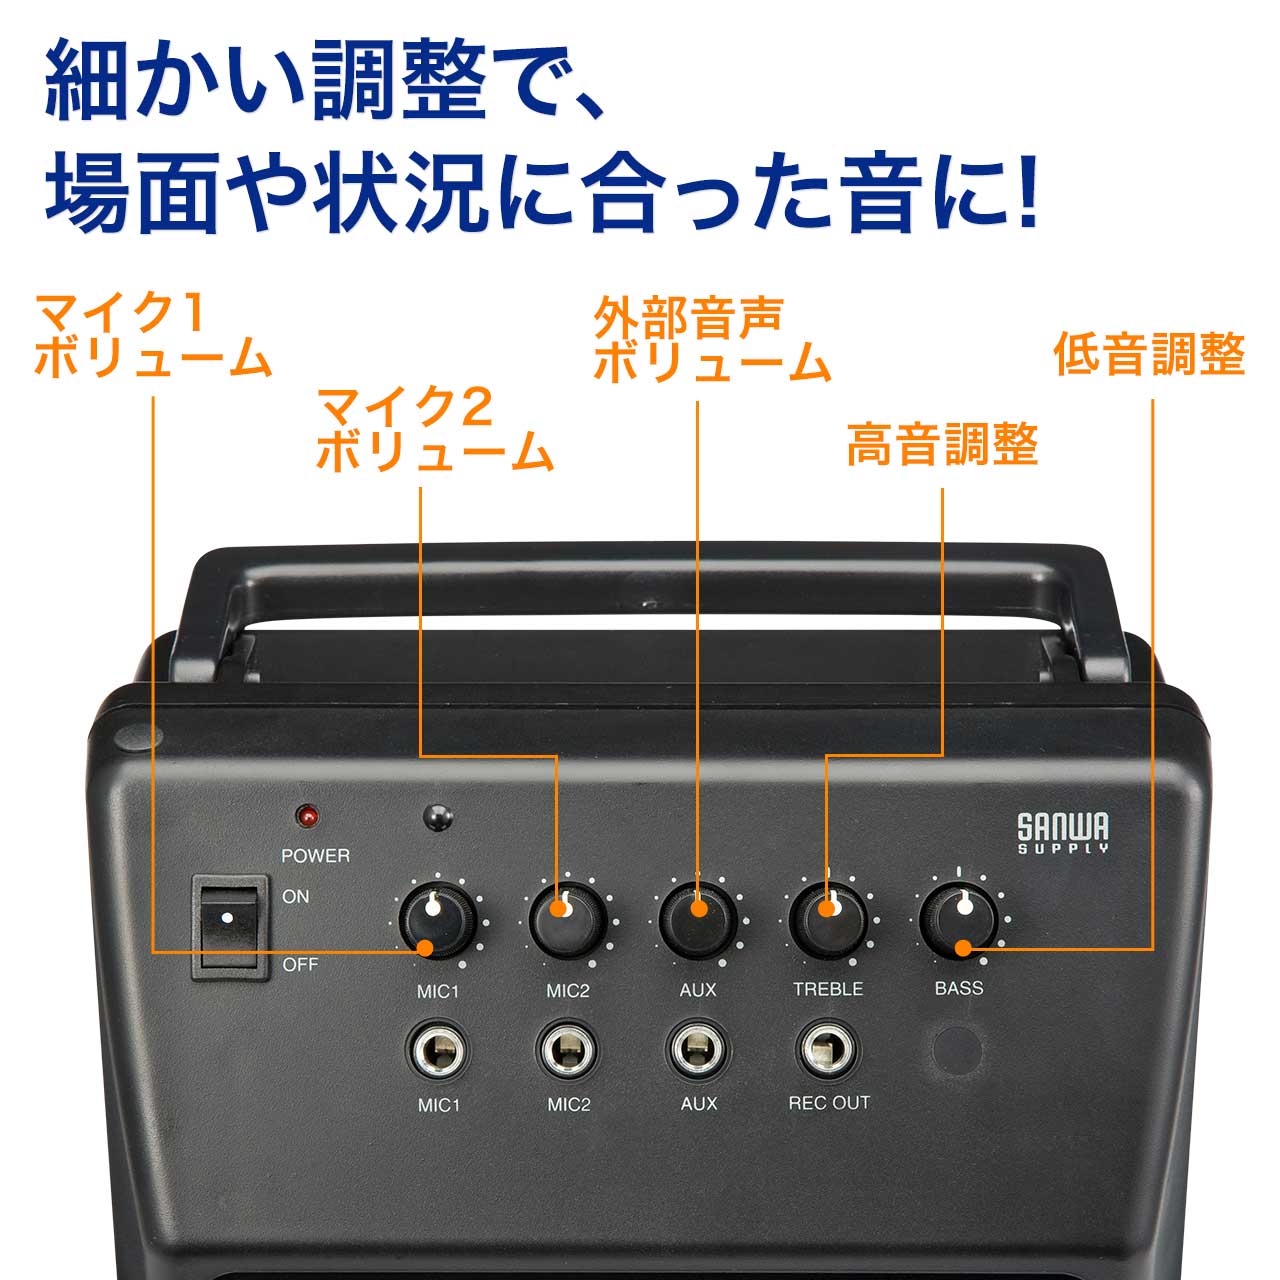 有線マイク付き 拡声器 20W出力 ポータブルPAシステム 選挙グッズ 400-SP044